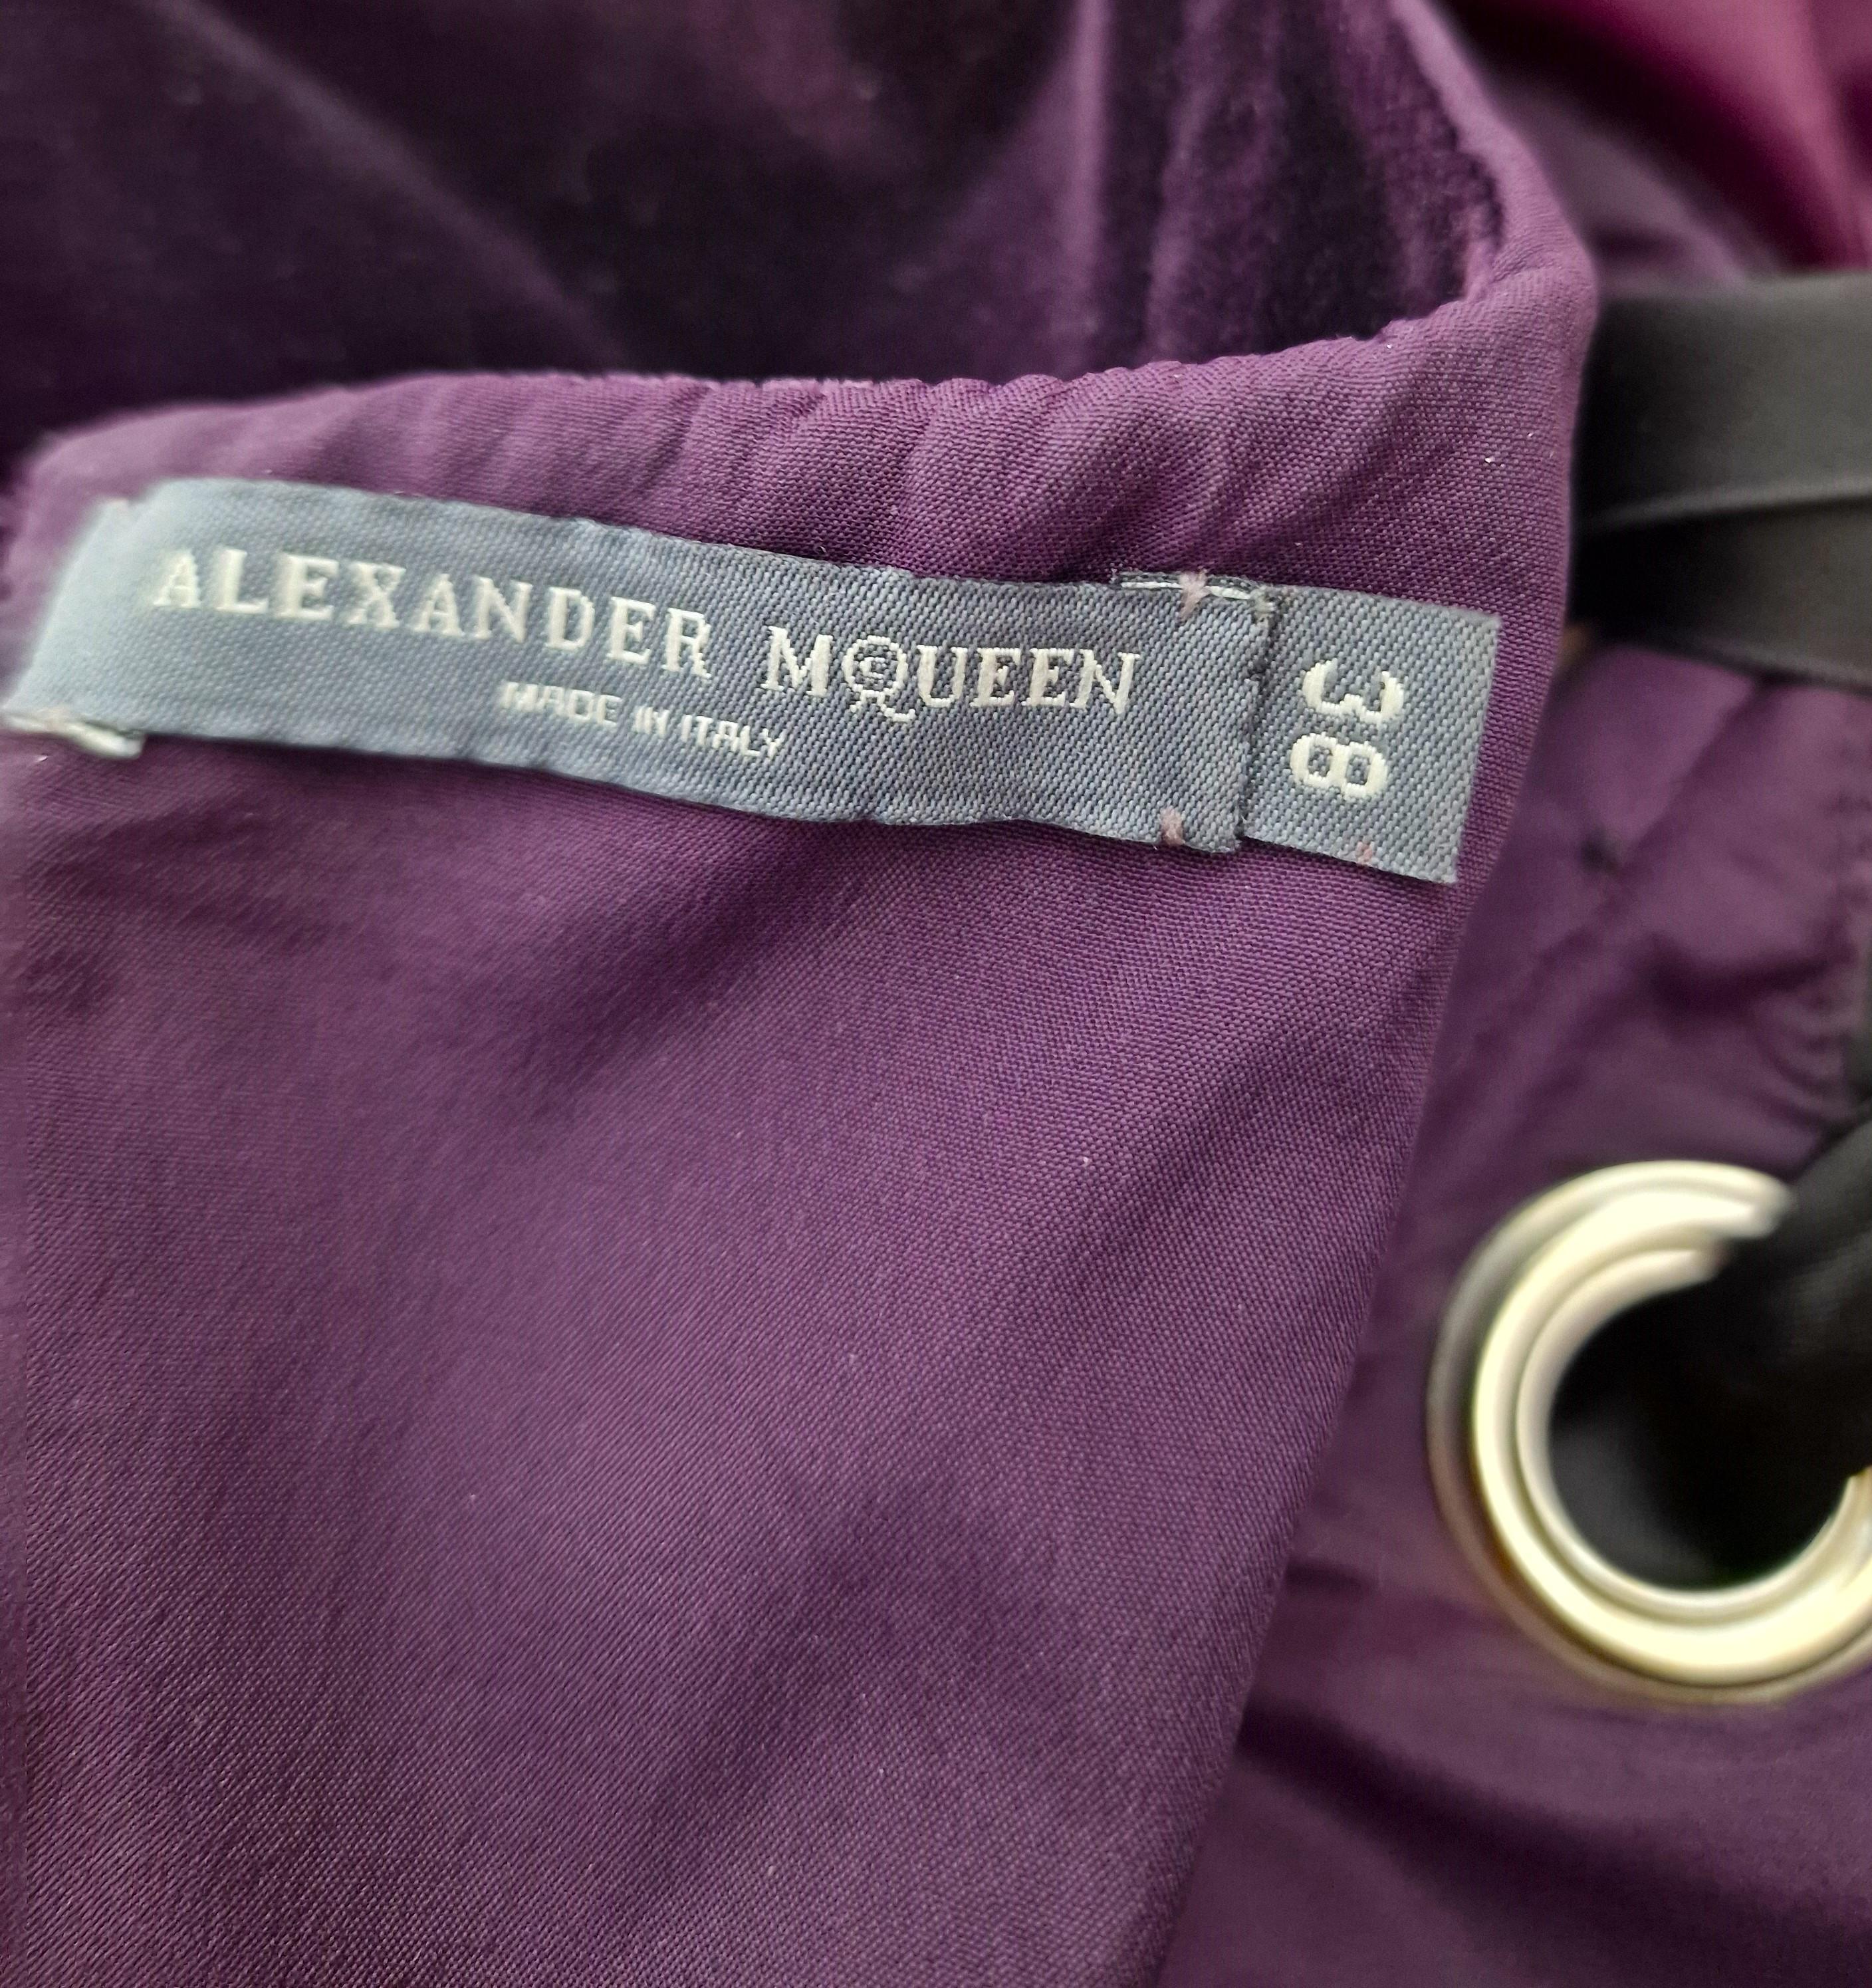 Alexander McQueen Corset Bustier Lace Up Tutu Petticoat Violet Medium Gown Dress For Sale 14